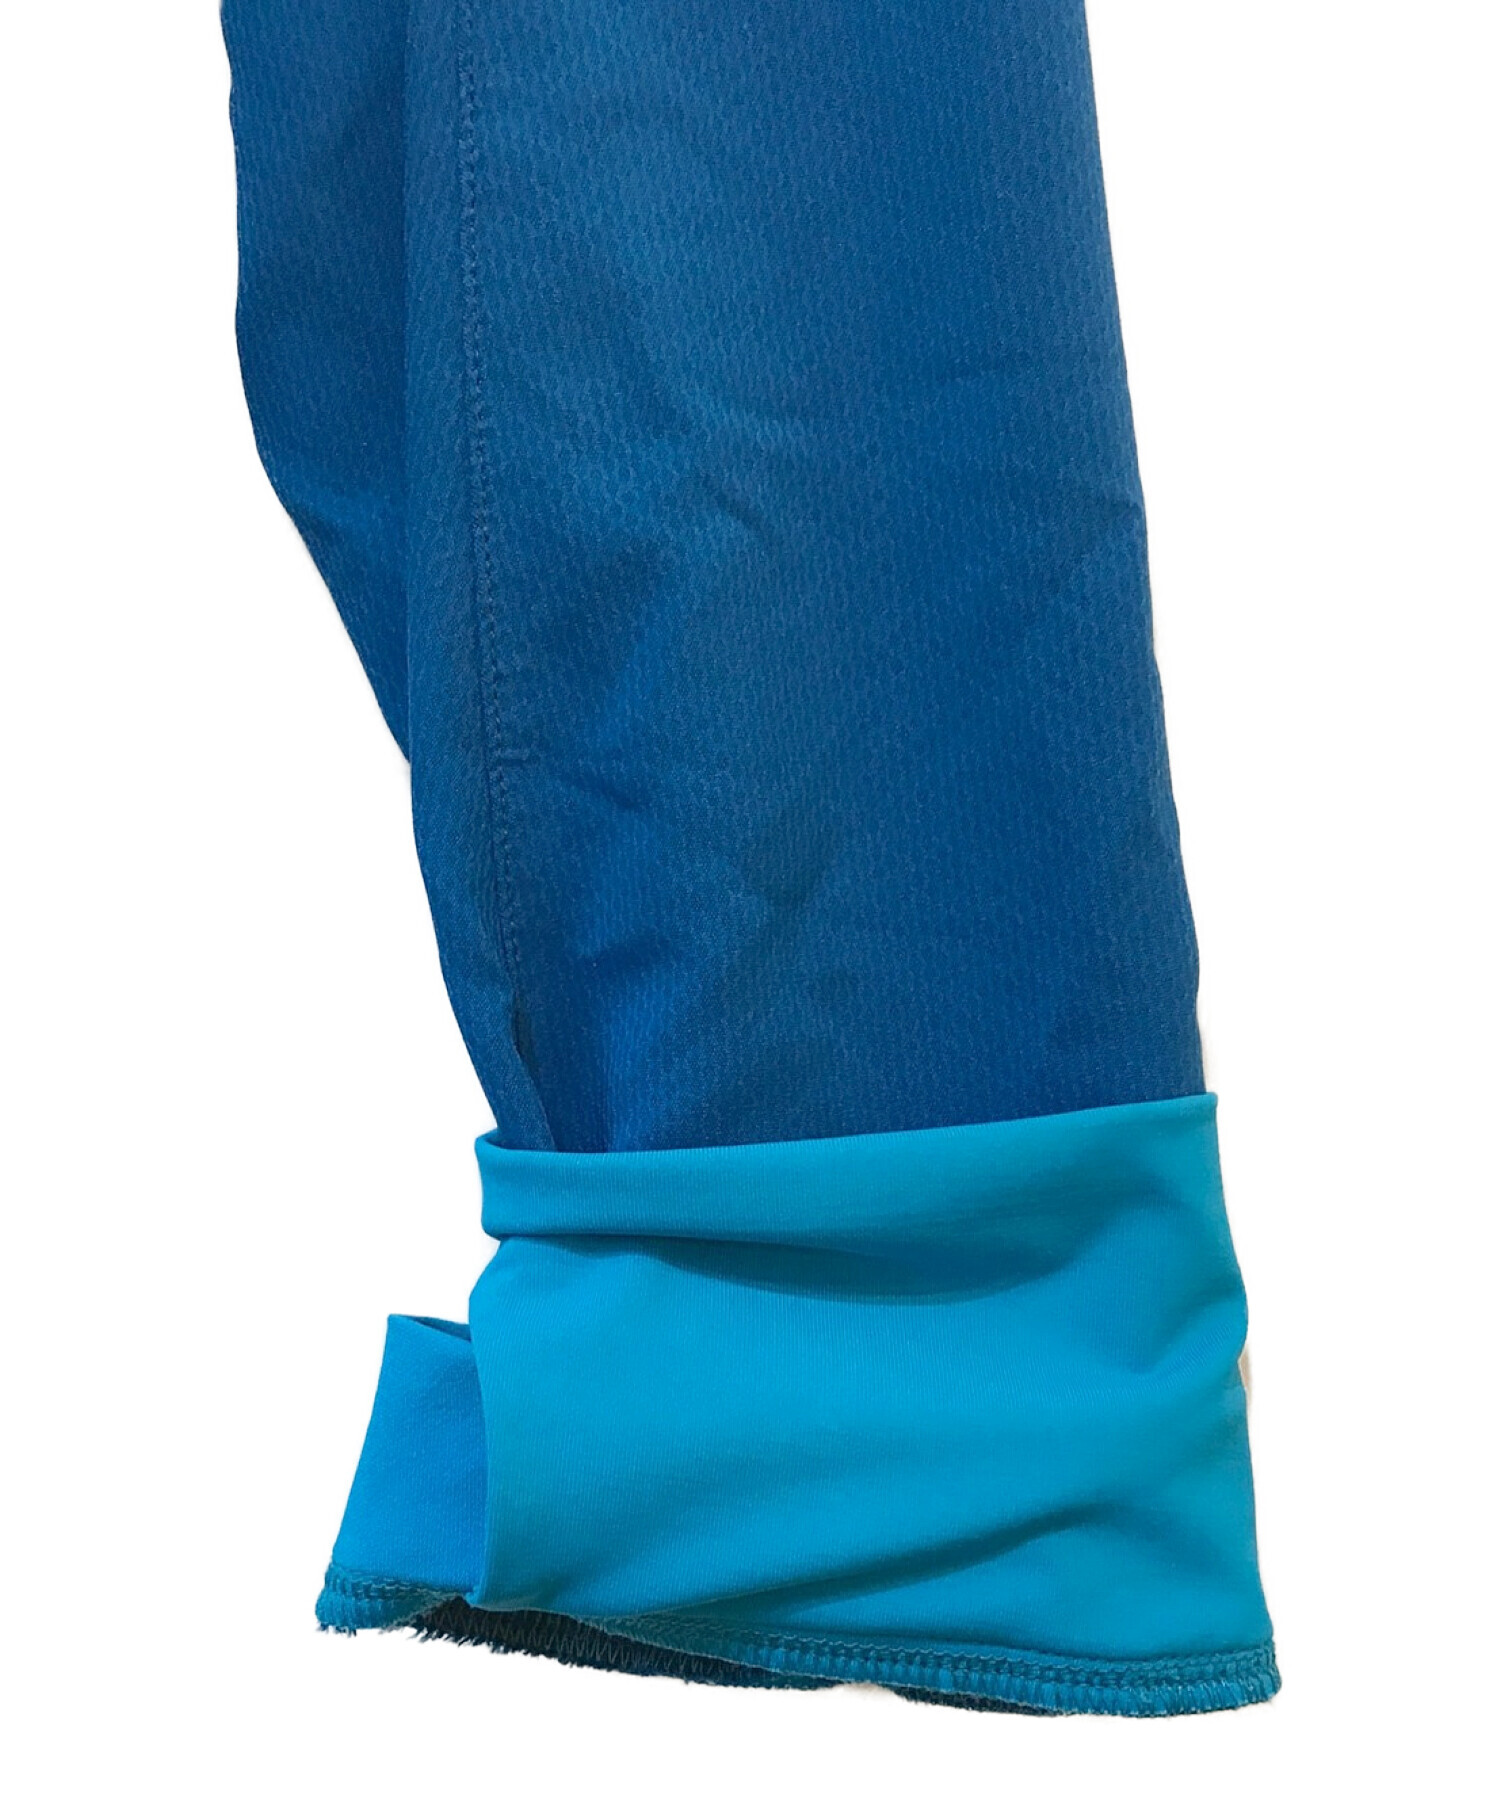 ARC'TERYX (アークテリクス) アクセラレータジャケット ブルー サイズ:M